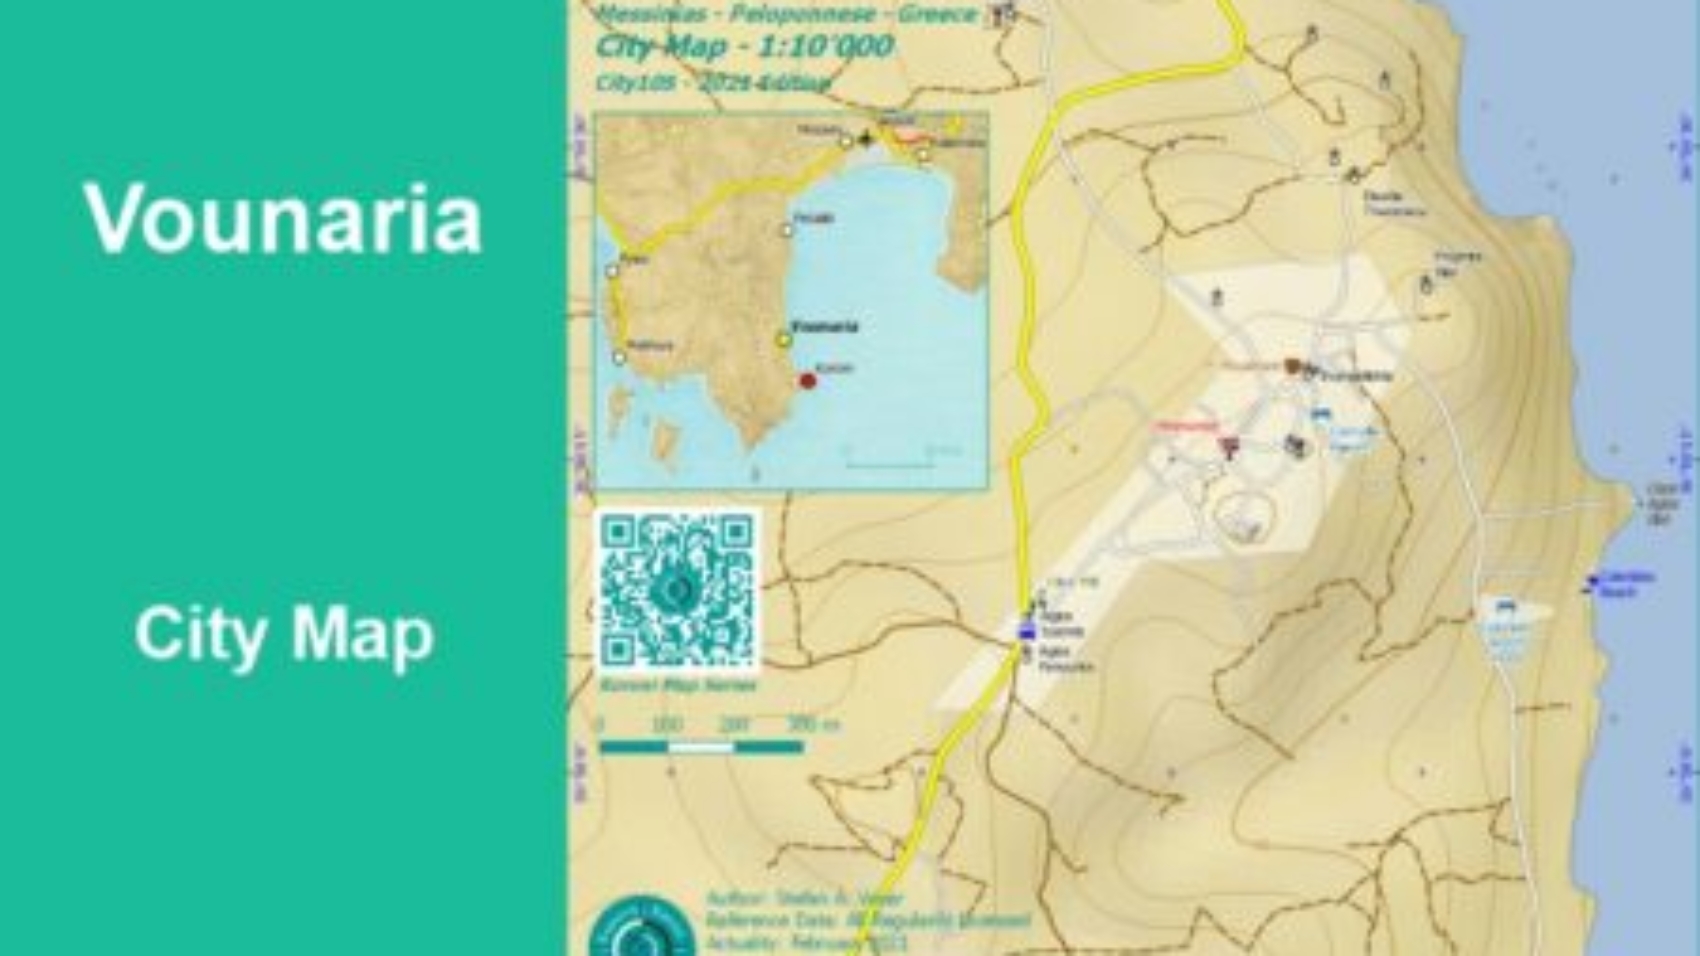 Vounaria City Map